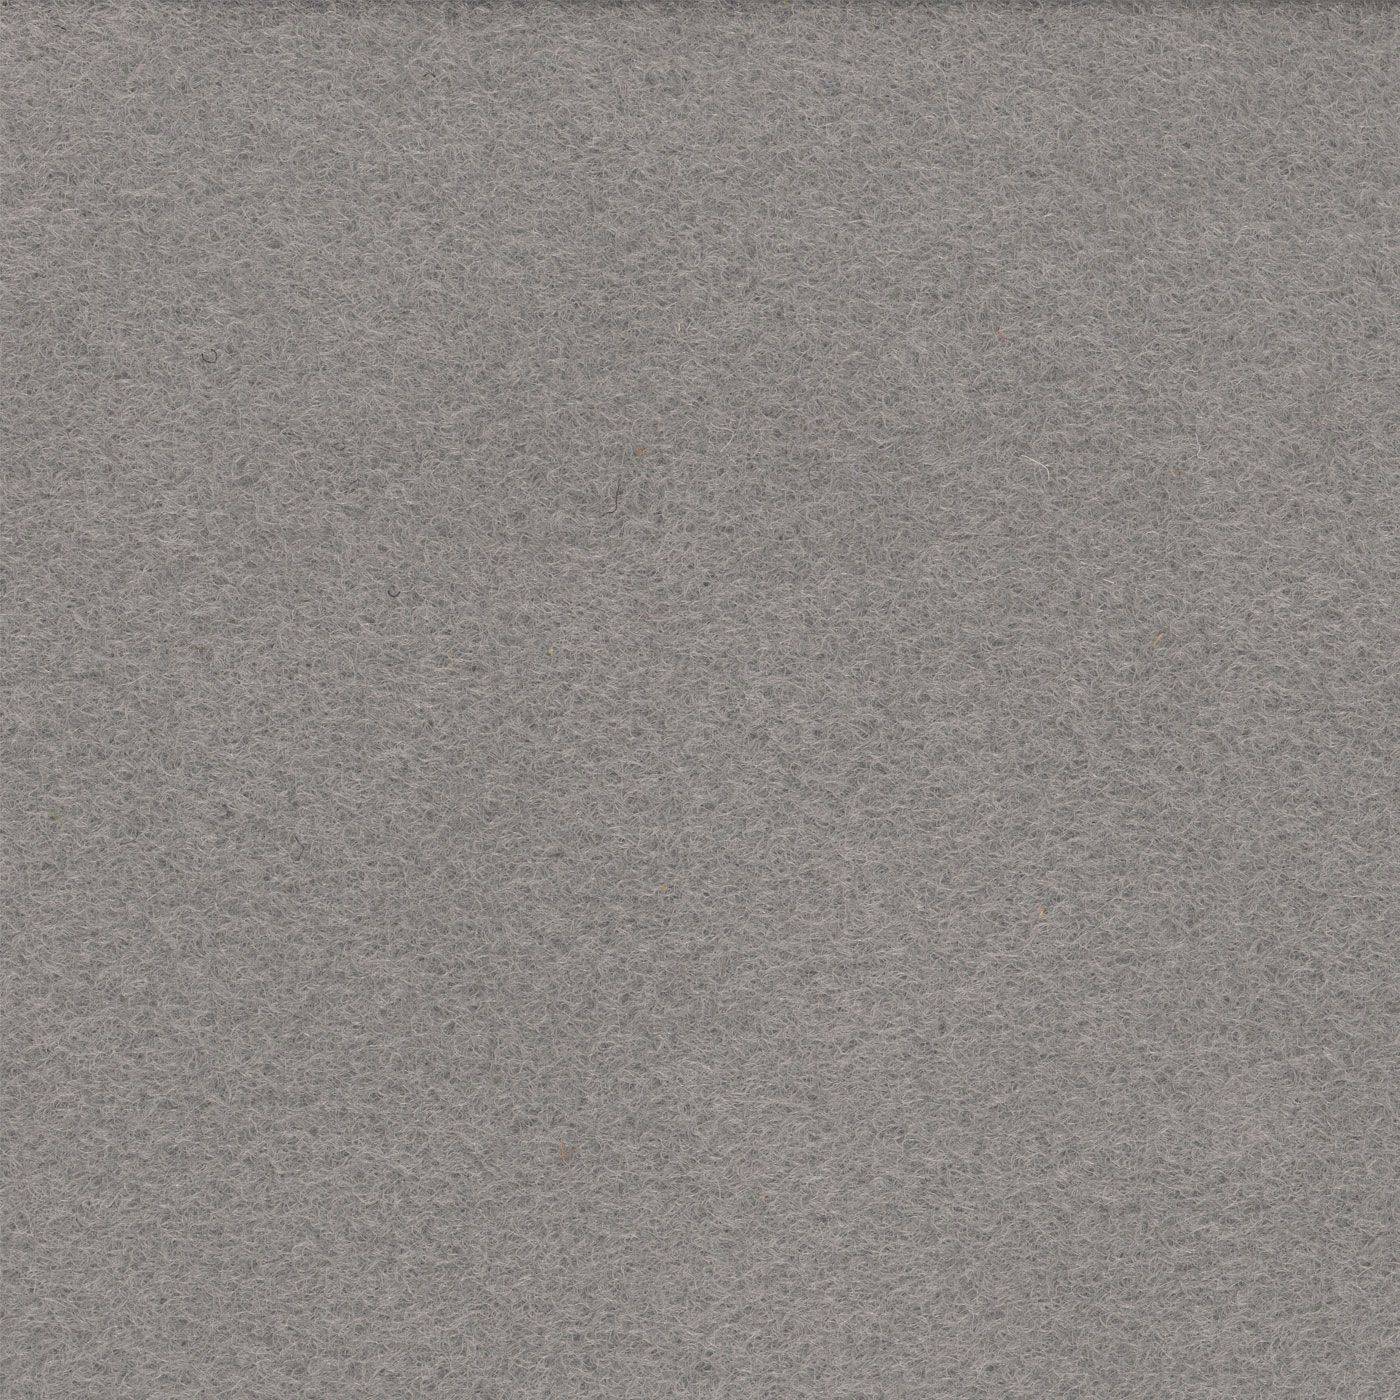 Rawson Carpet Felkirk Cool Grey CM124